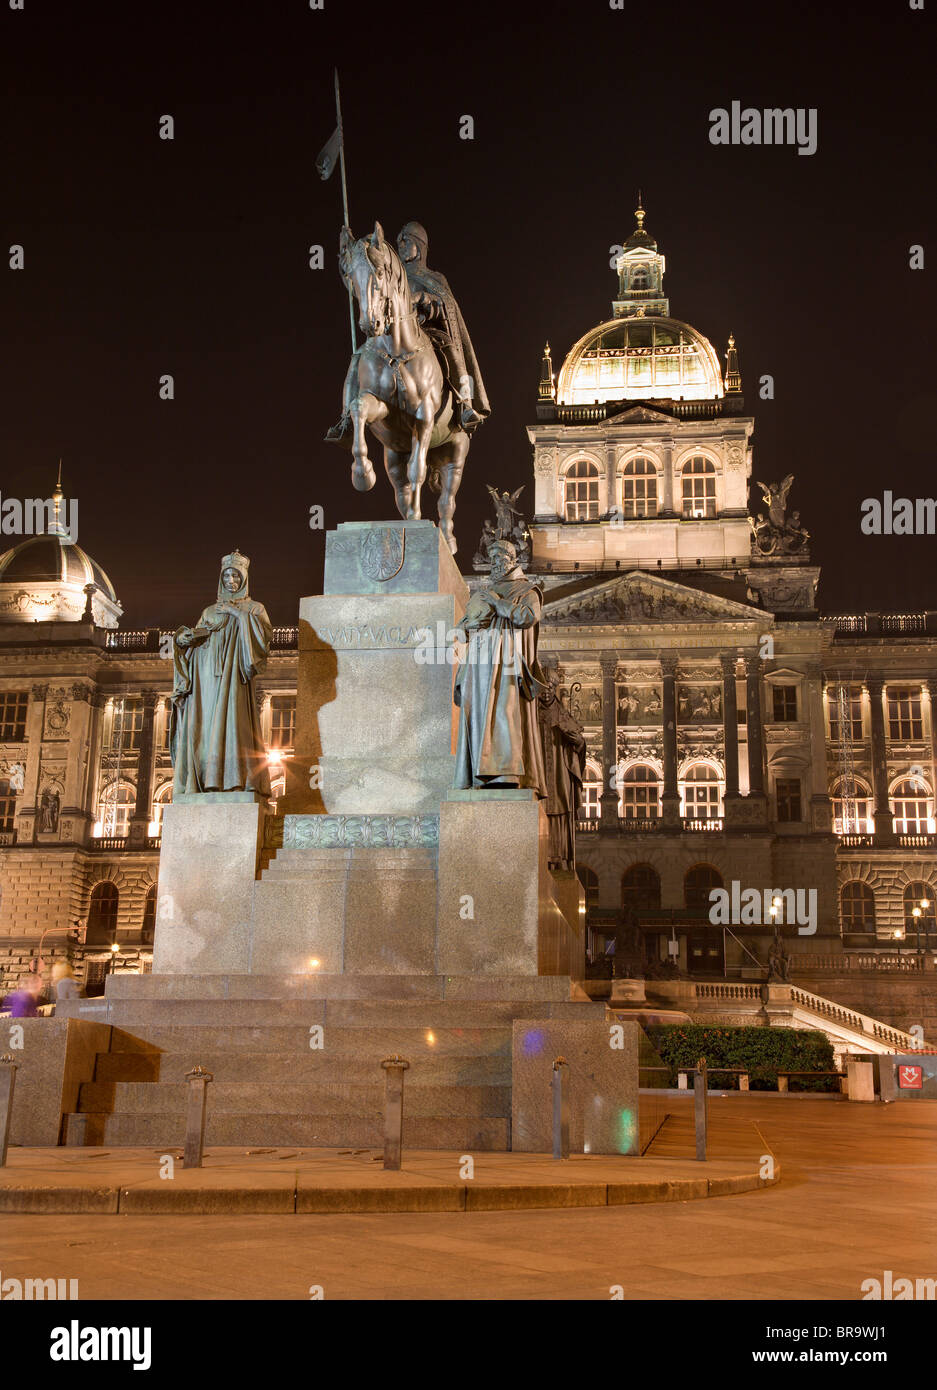 Prague - musée national et le Mémorial de saint. Vencelas - statue de capital par J.J.Bendl - 1678 Banque D'Images